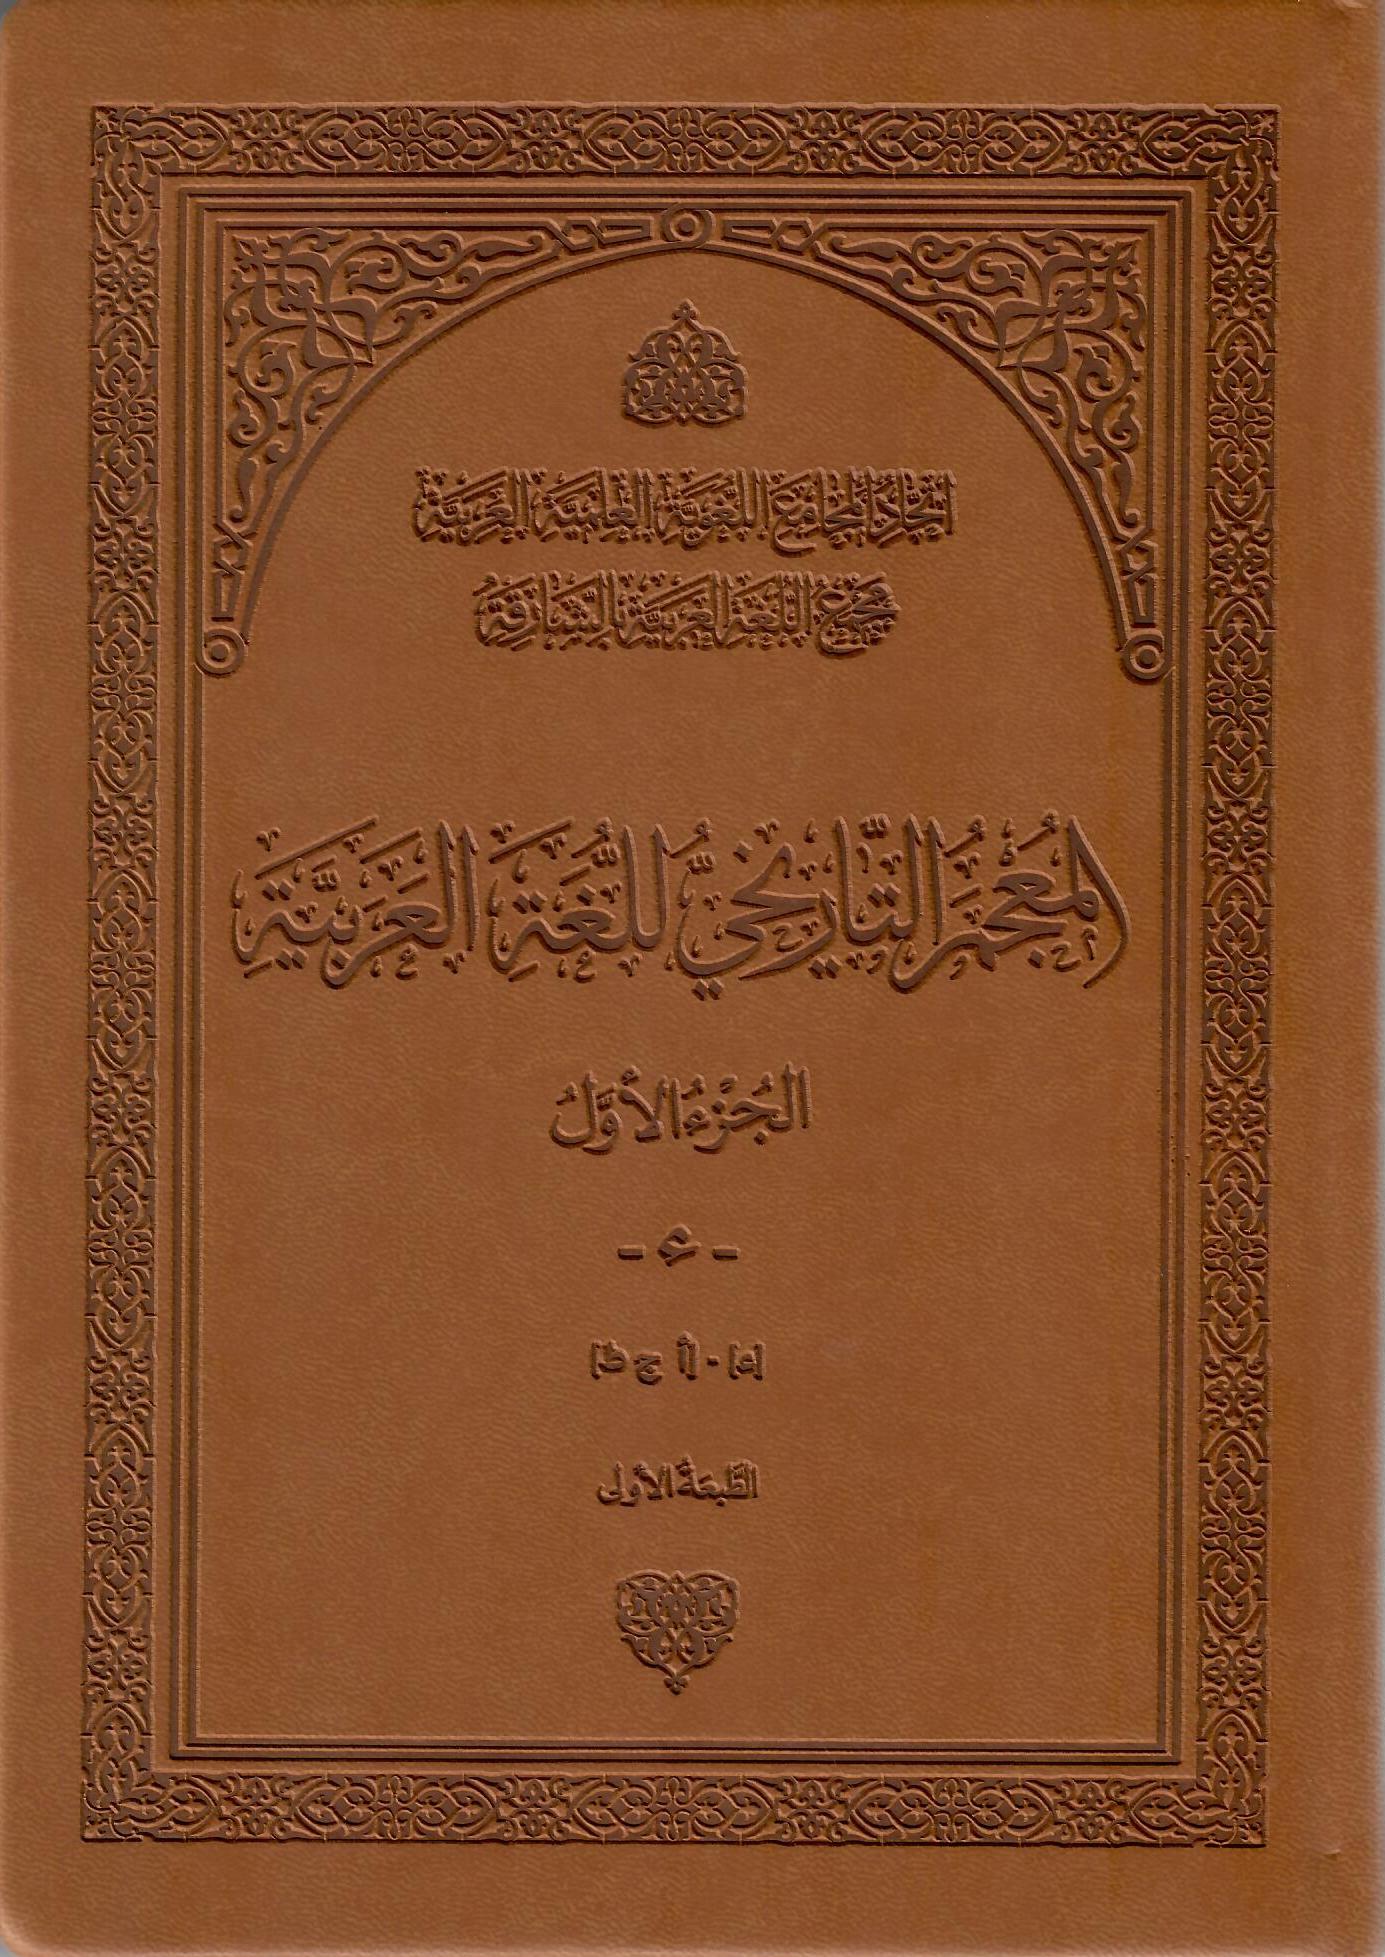 المجمع التاريخي للغة العربية الجزء الأول